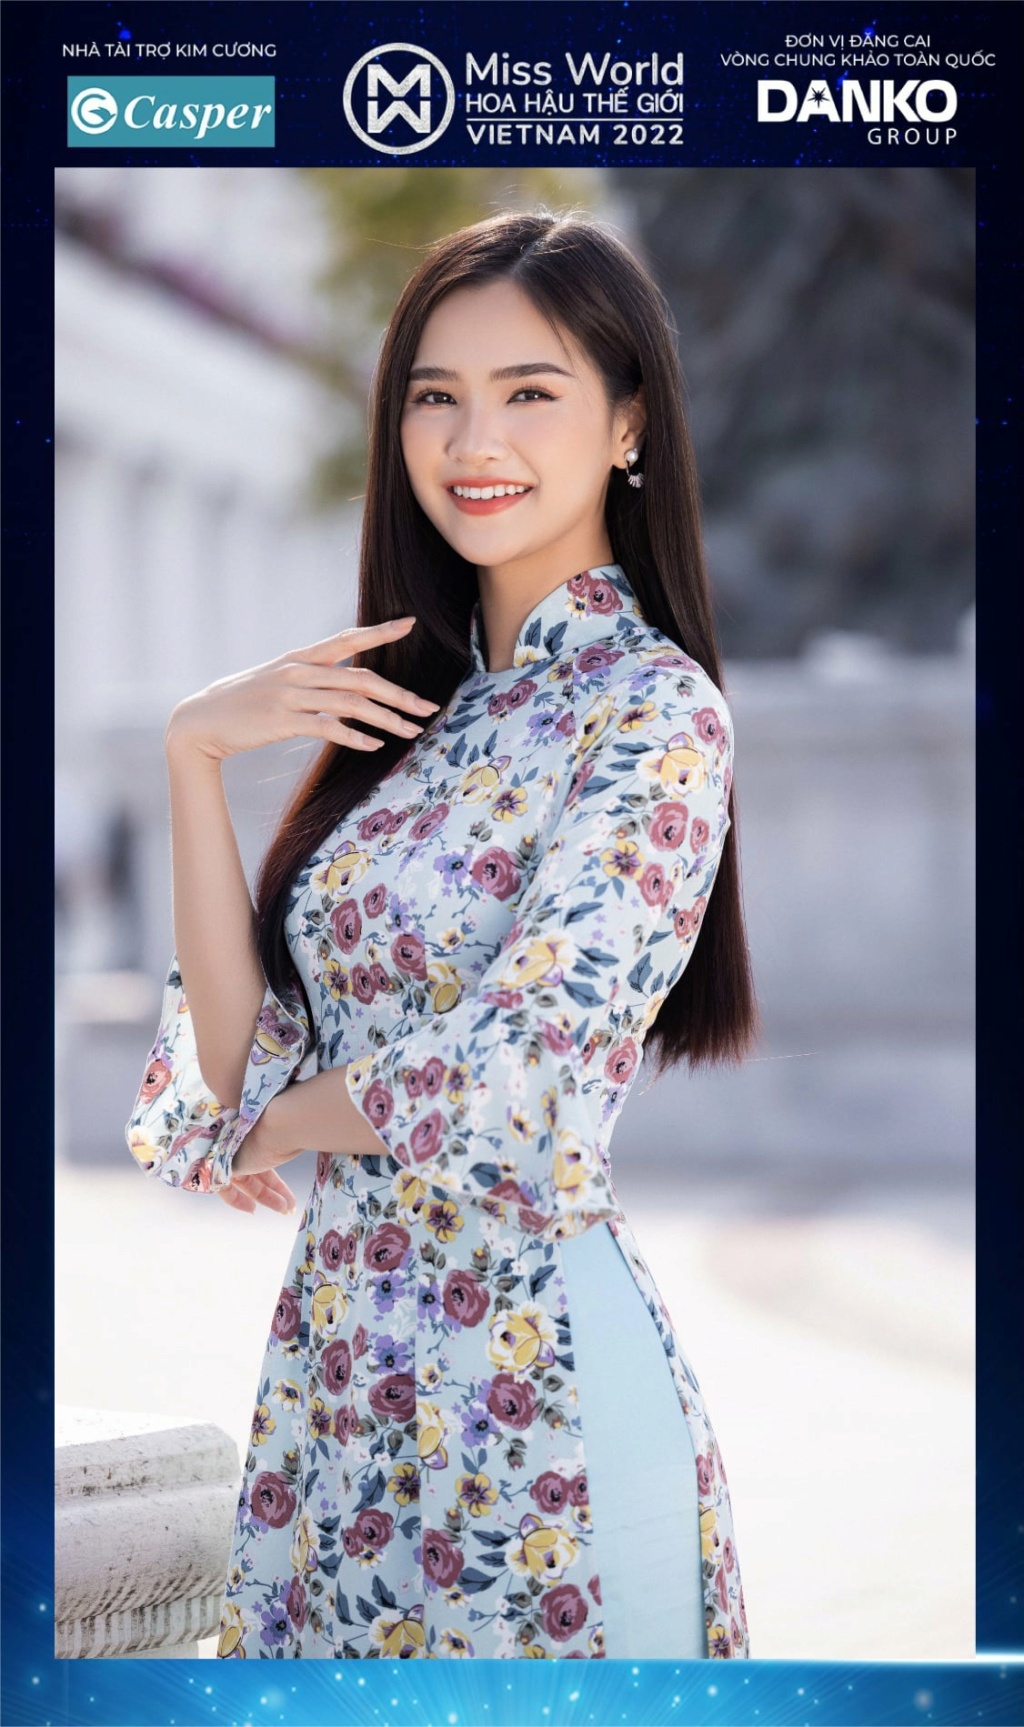 Miss World Vietnam 2022 27913111